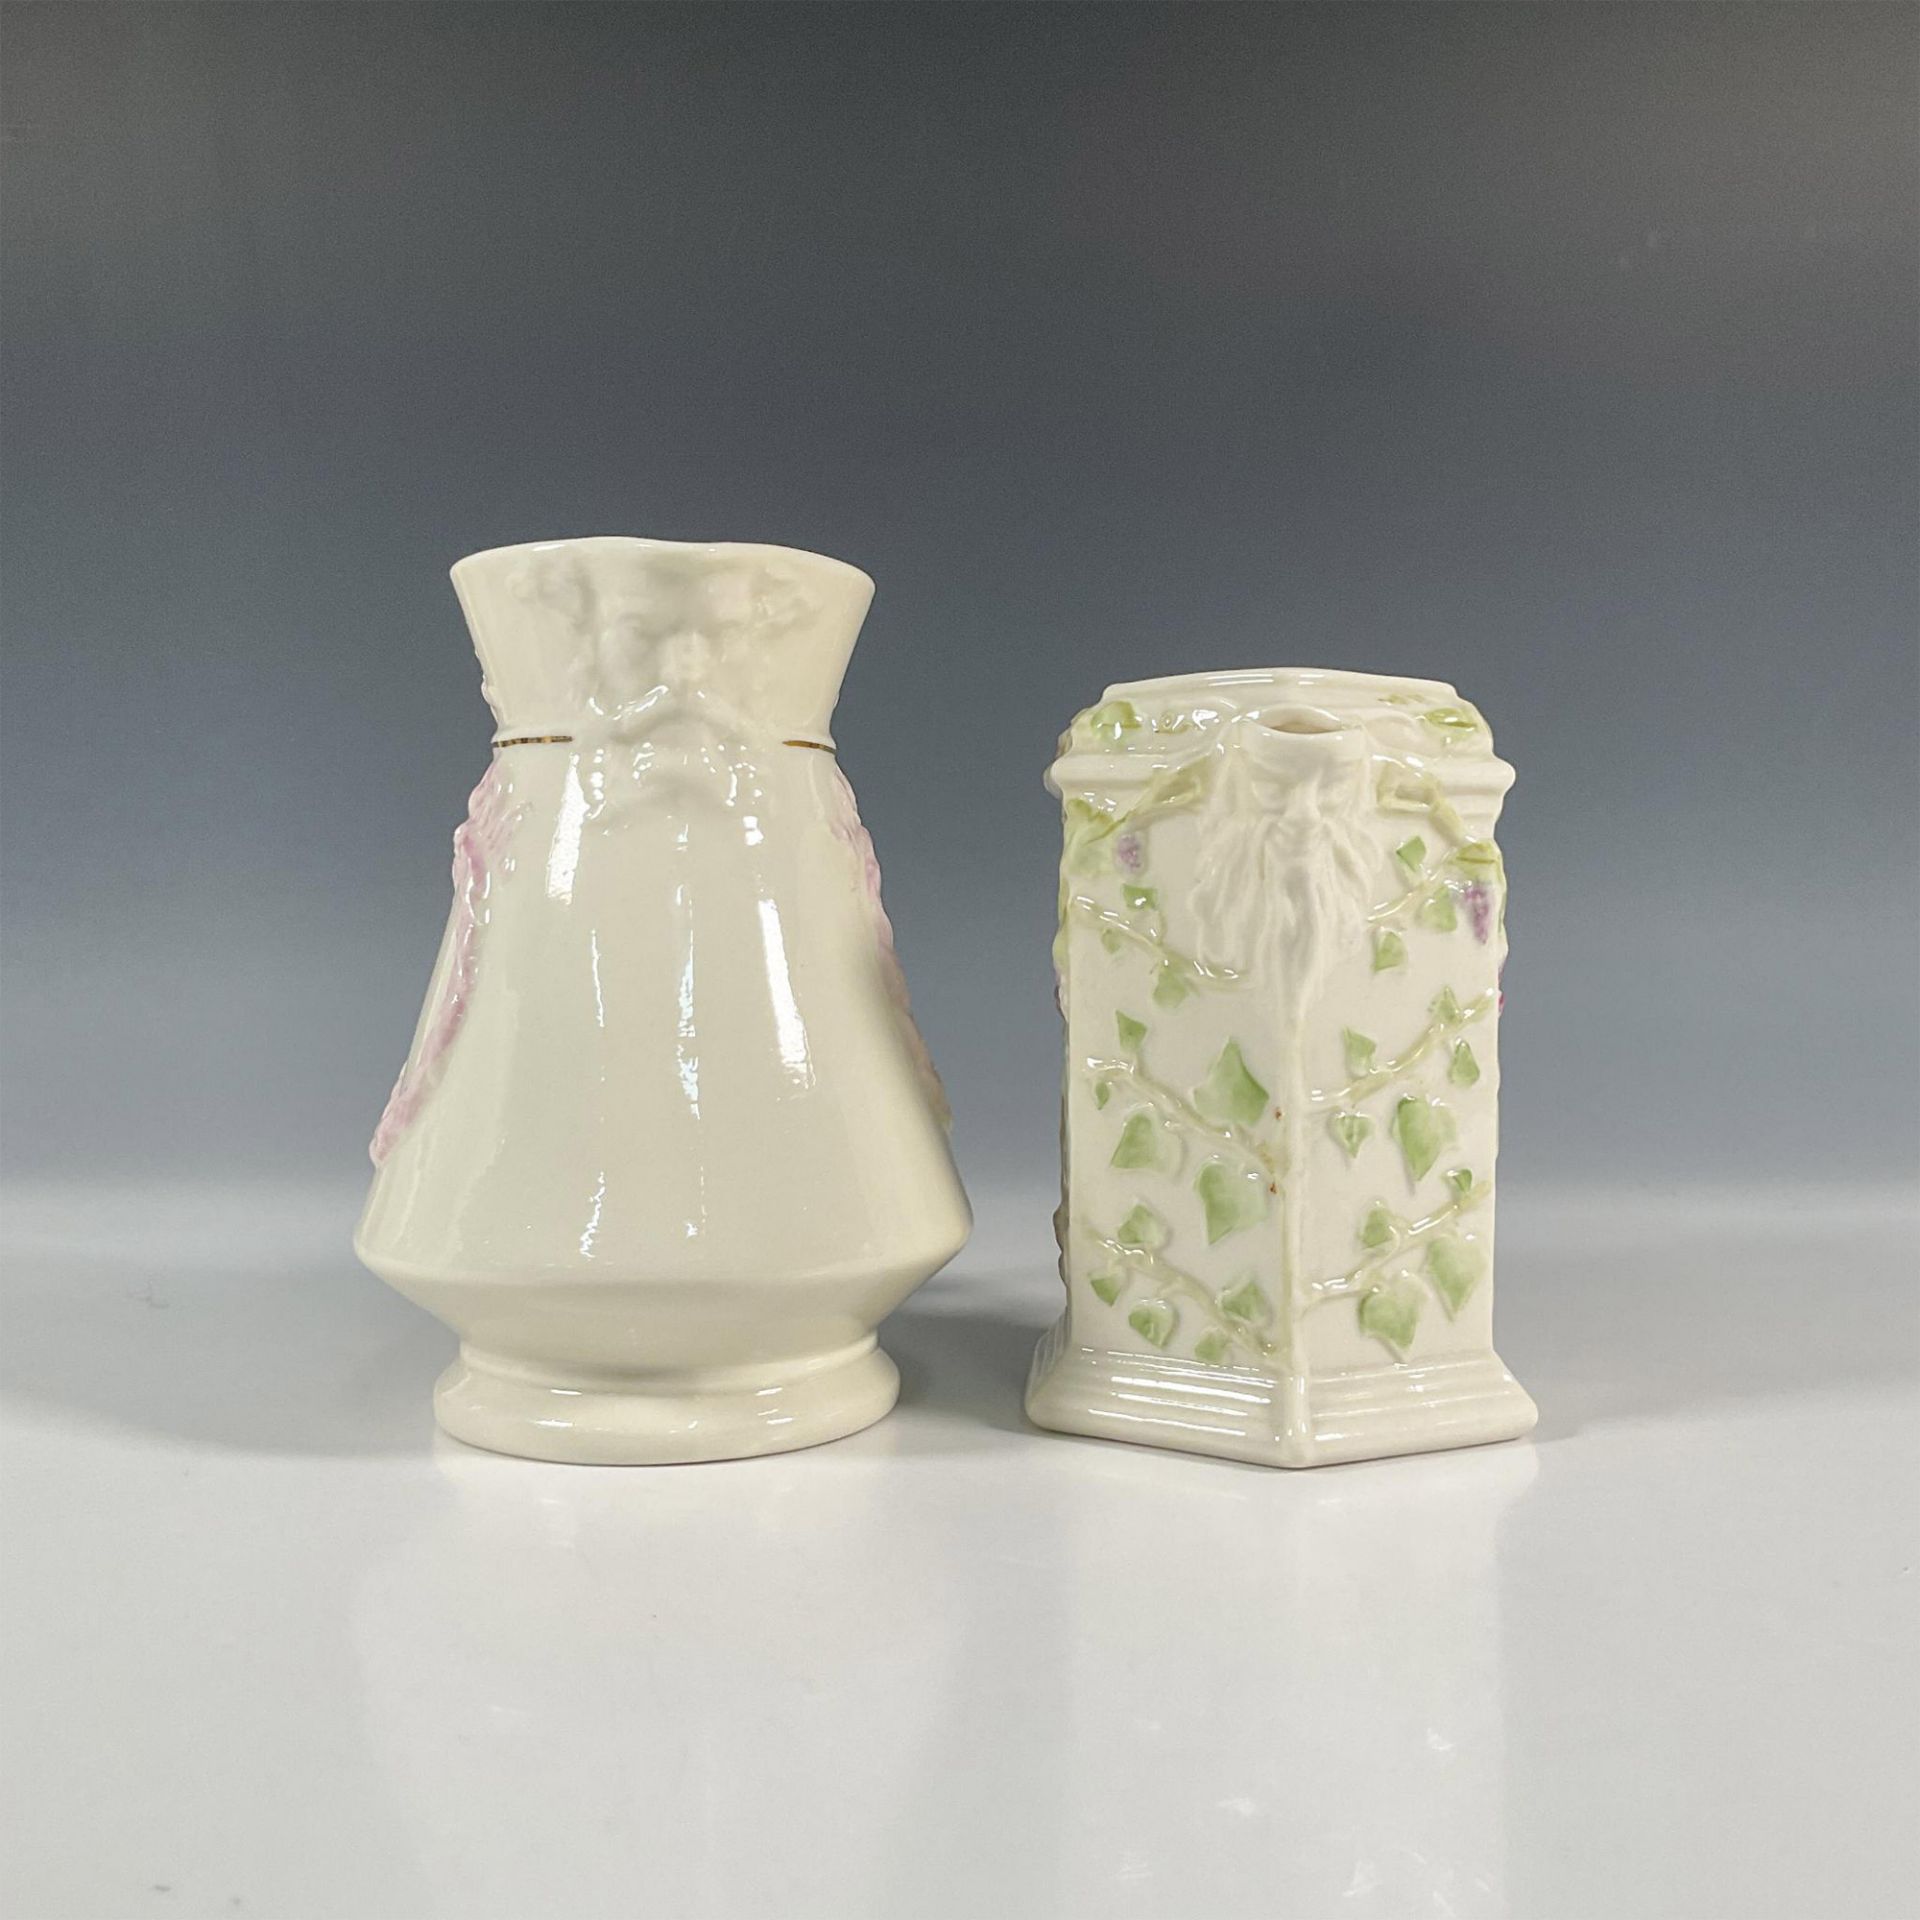 2pc Belleek Porcelain Florence Pitcher and Vine Jug - Image 4 of 5